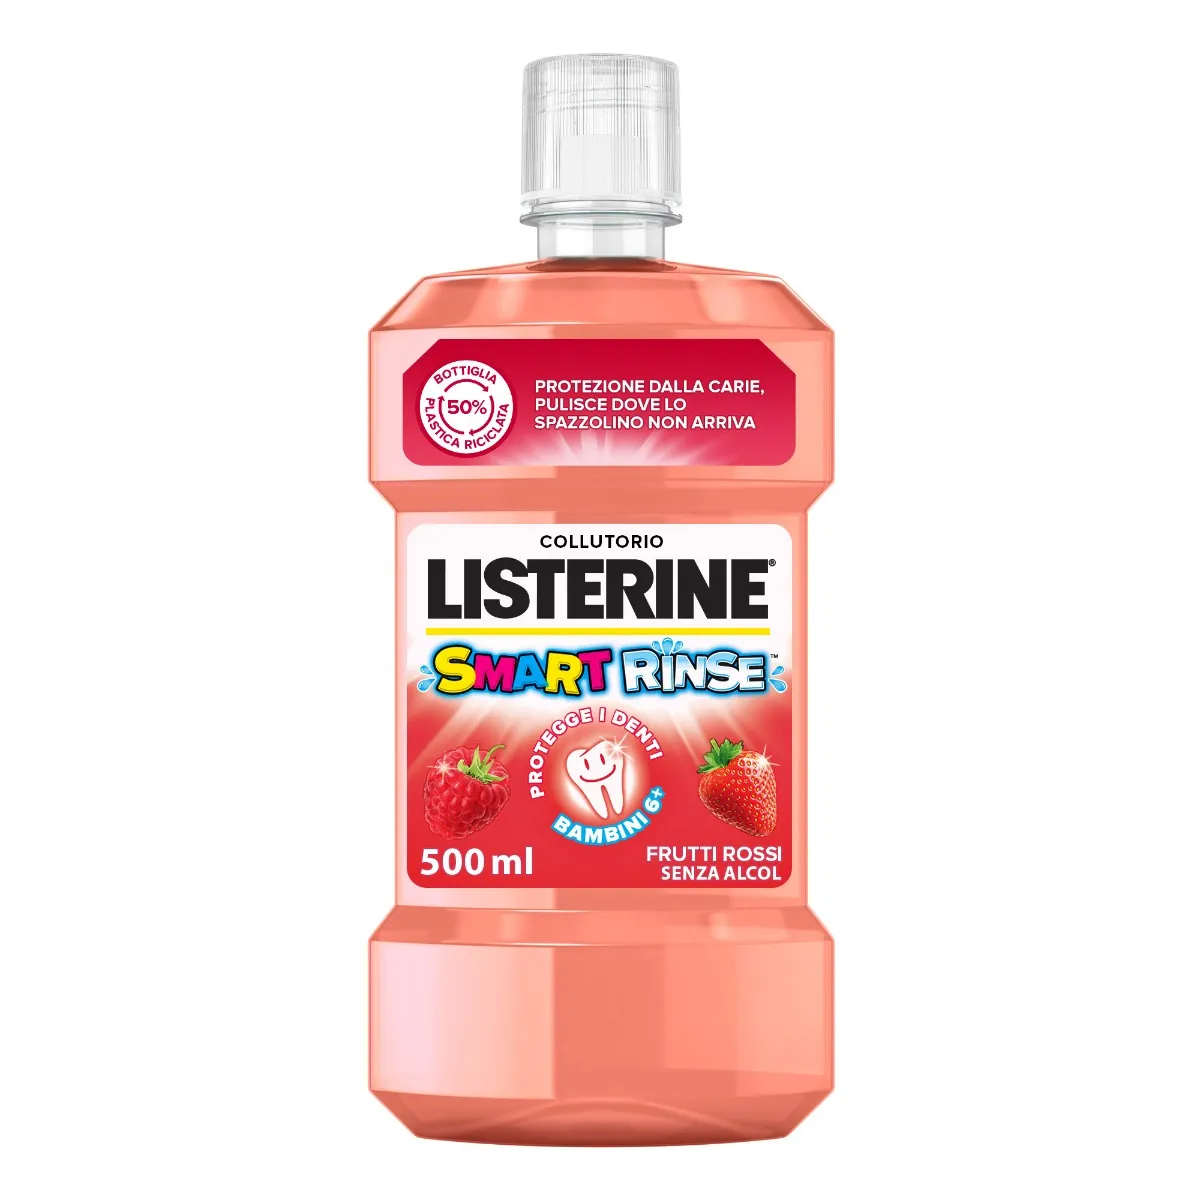 Listerine Smart Rinse Collutorio Bambini 500 ml Protezione Carie